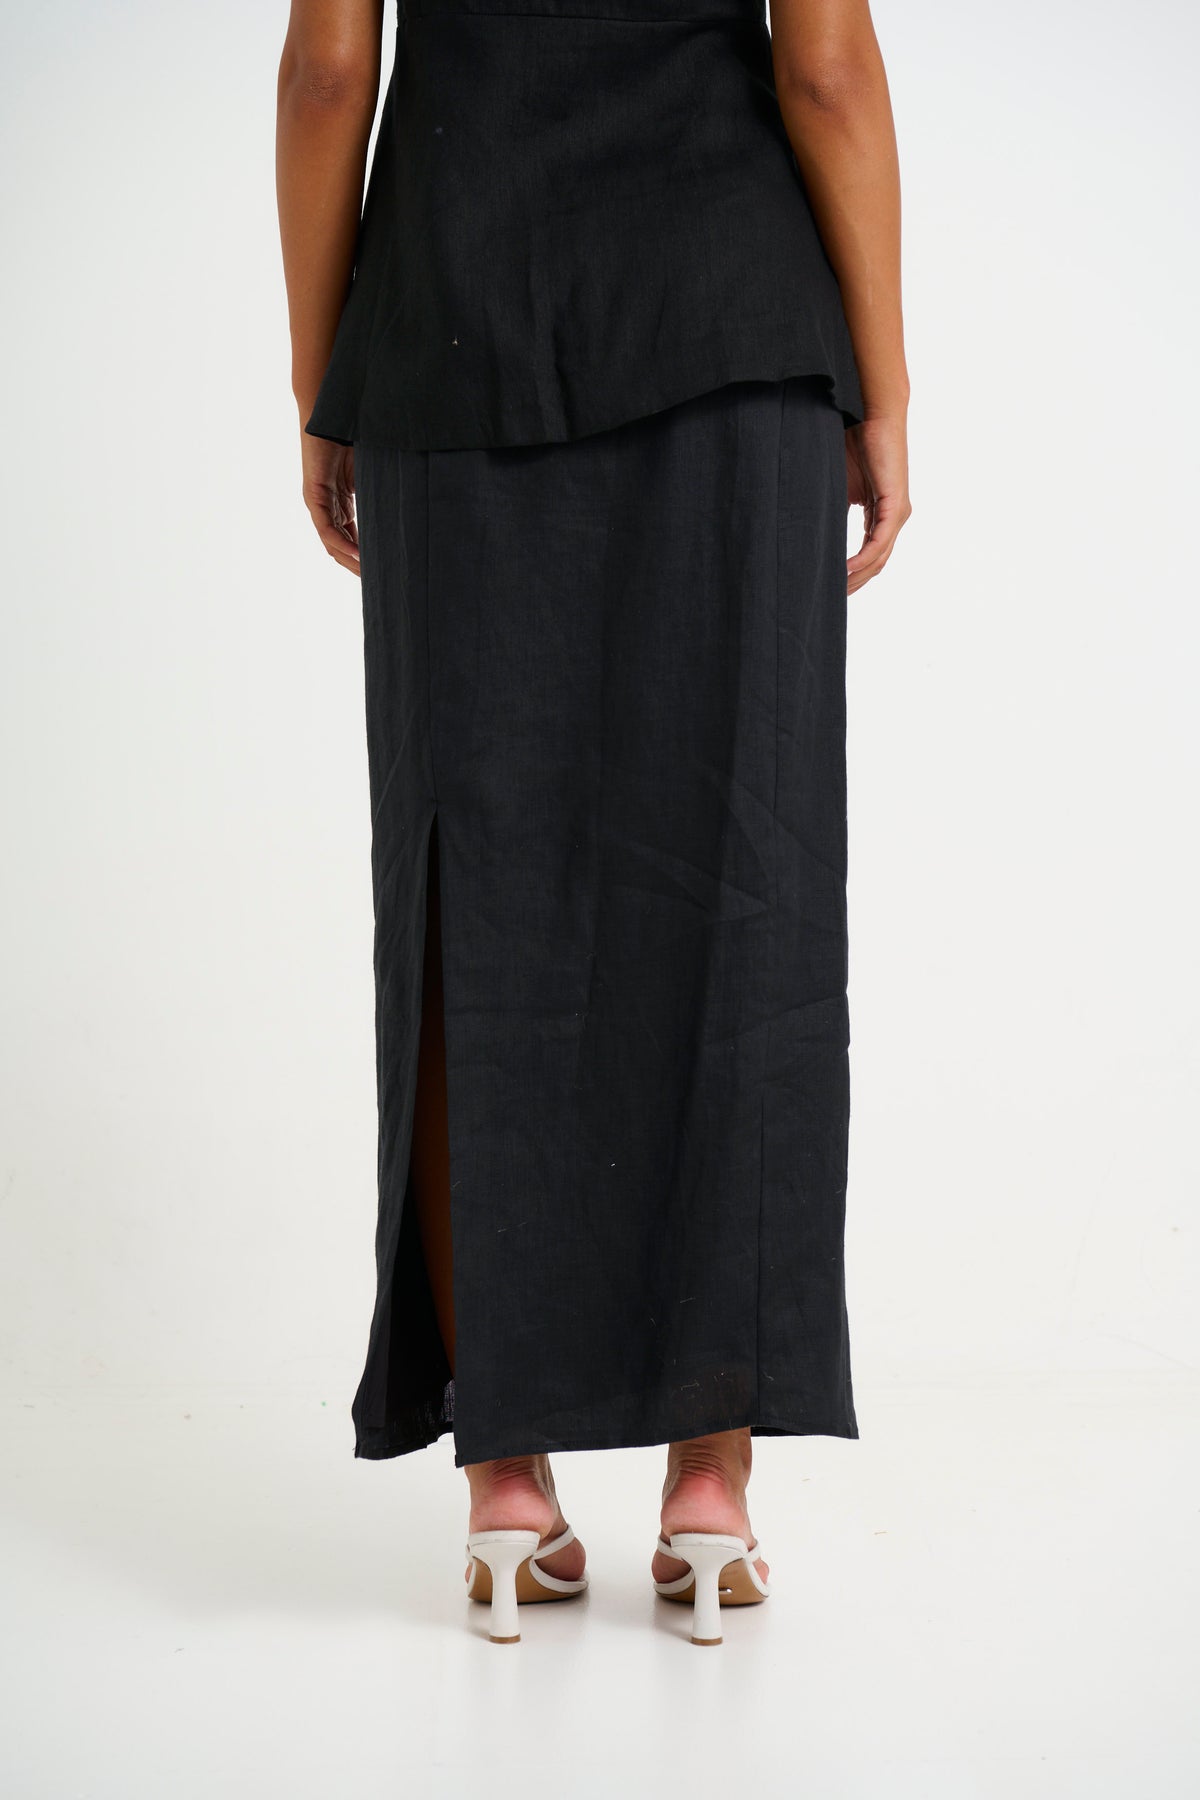 Luca Linen Maxi Skirt Black - FINAL SALE